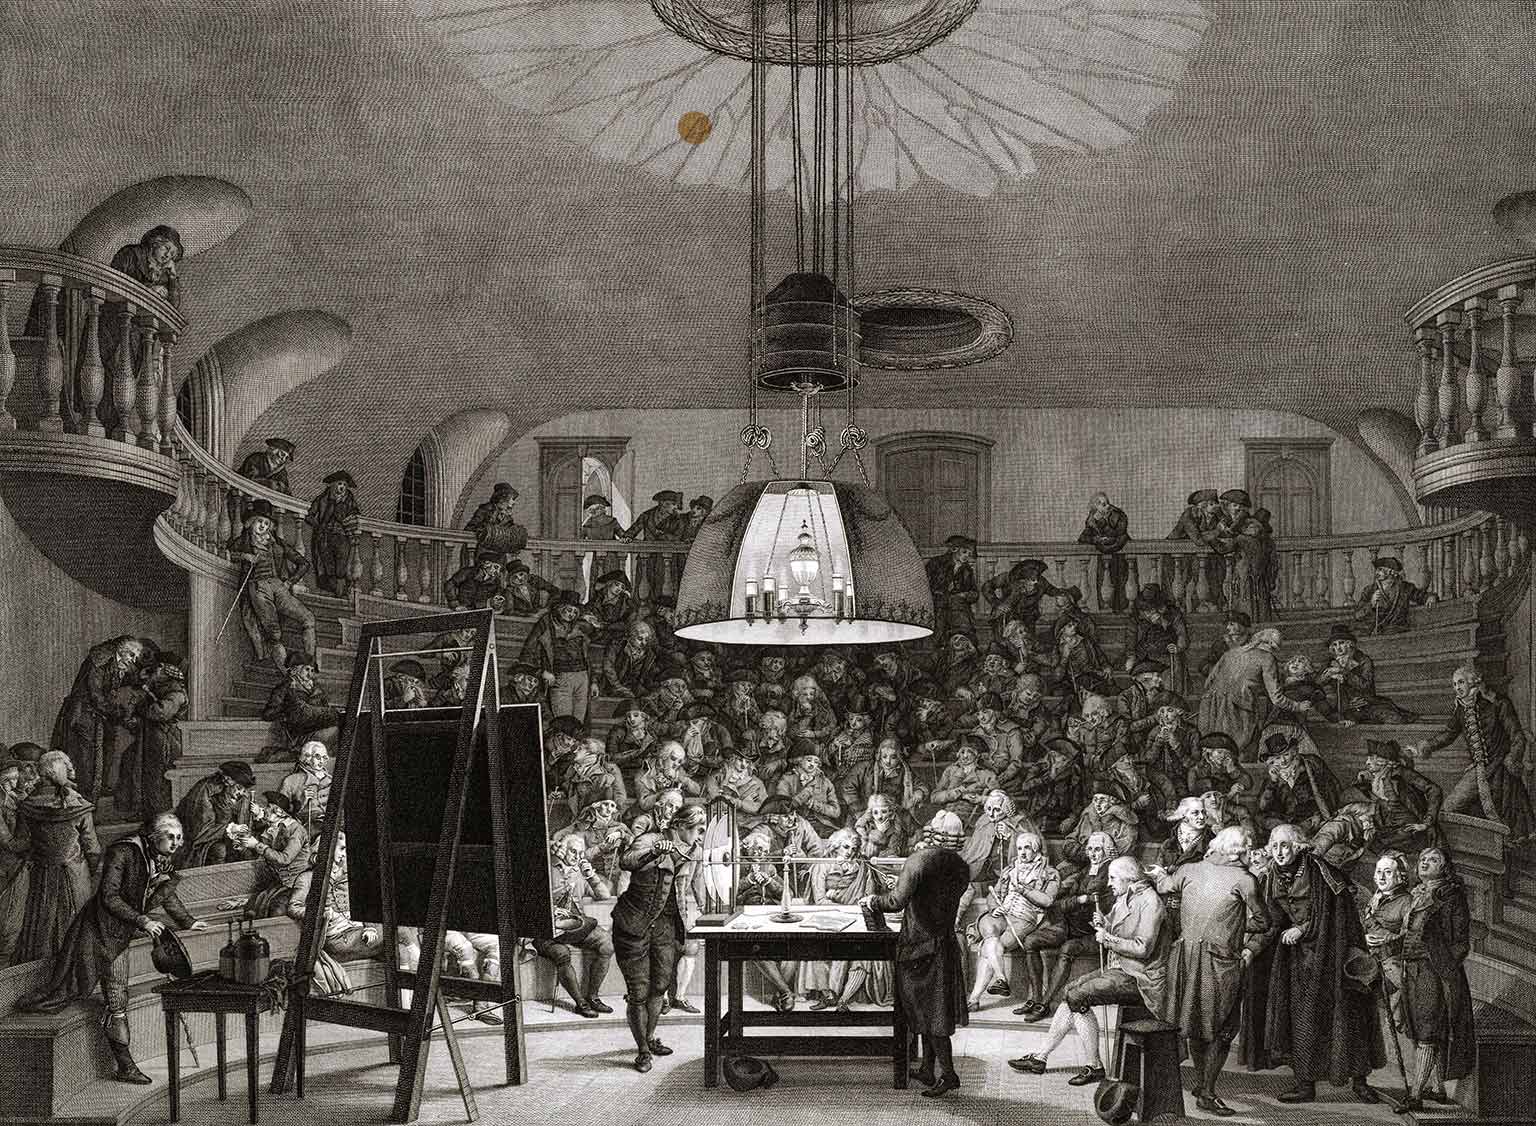 Natuurkundezaal in Felix Meritis, Amsterdam, gravure uit 1801